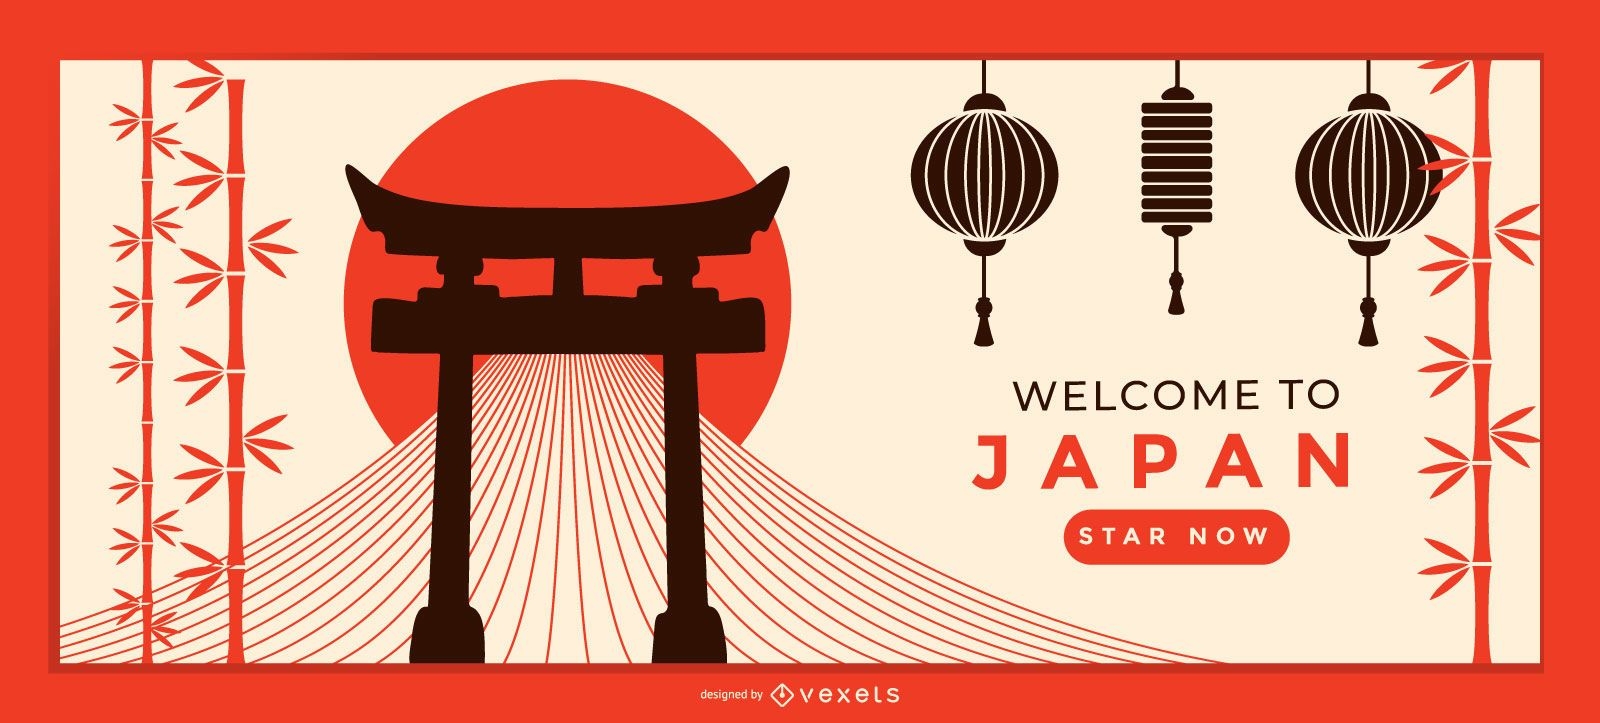 Plantilla de página de destino de bienvenida a Japón